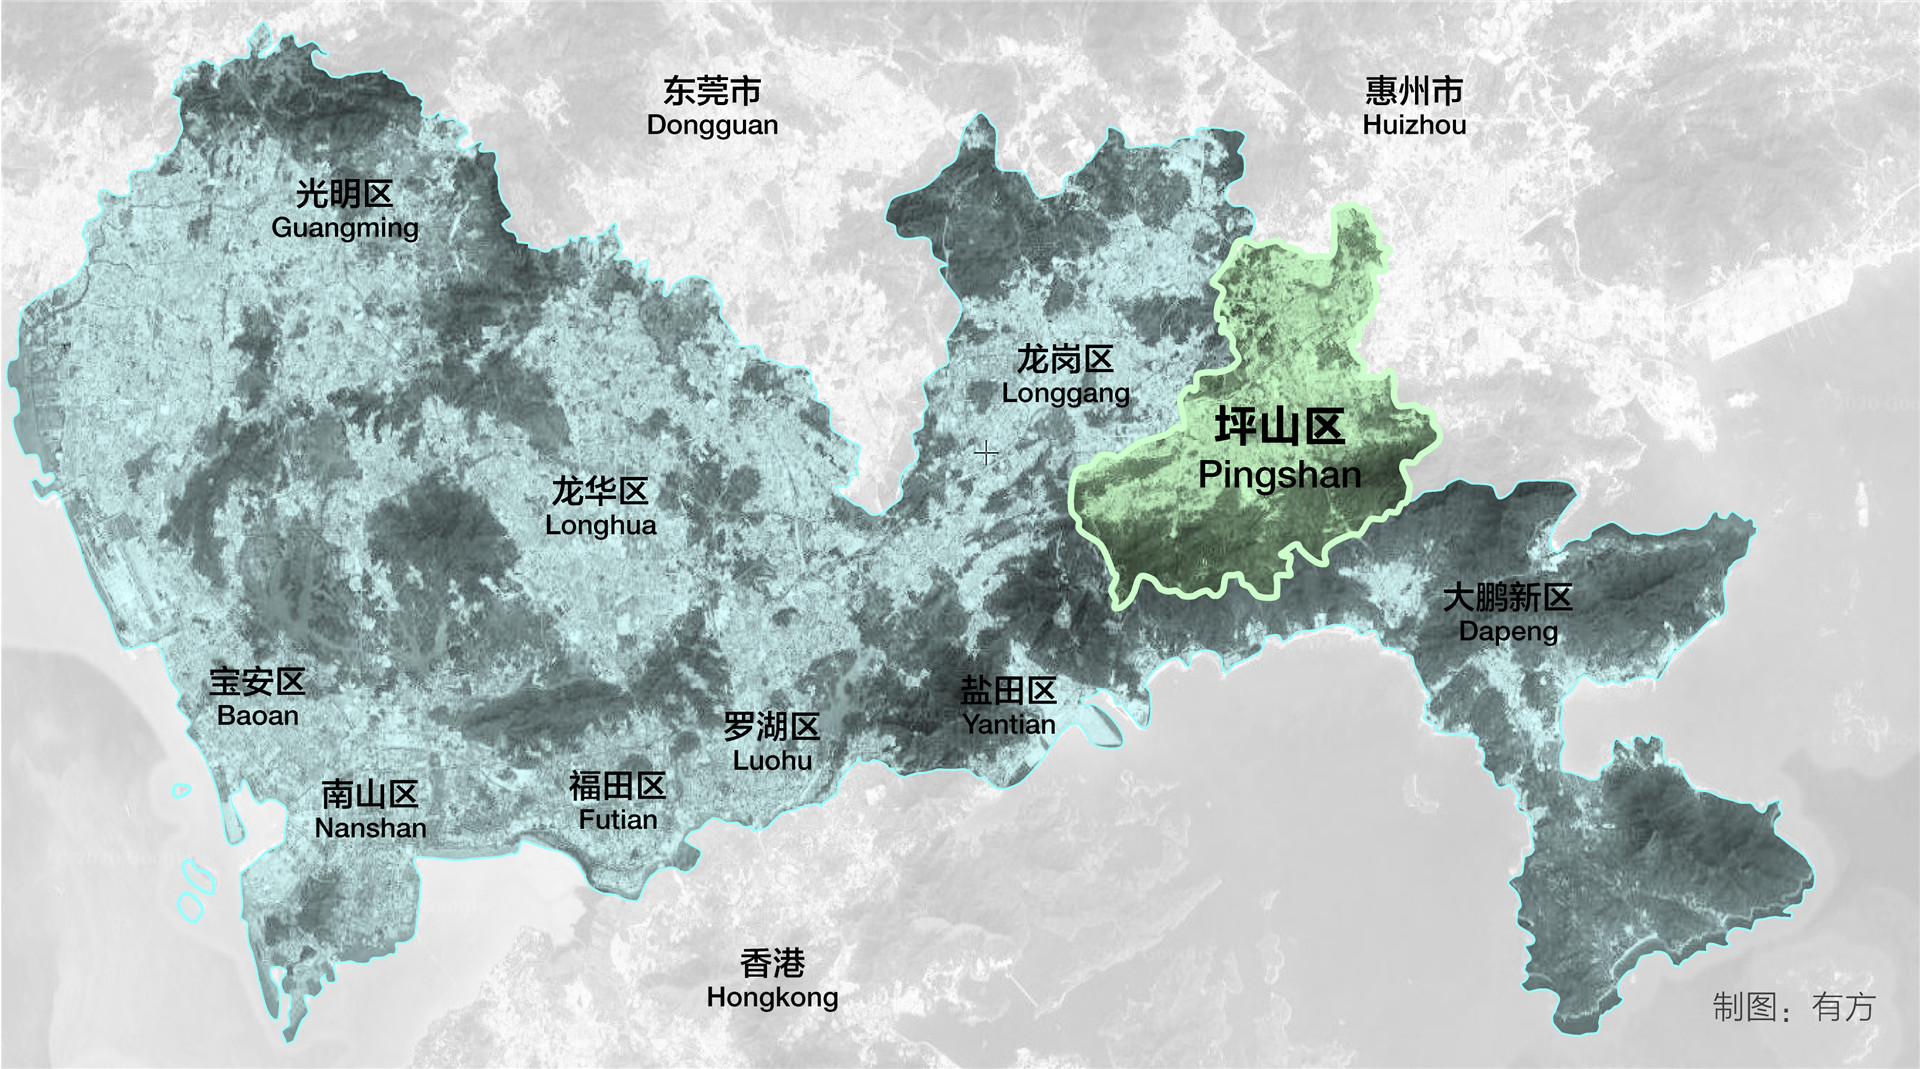 坪山区位图 Pingshan District Location/